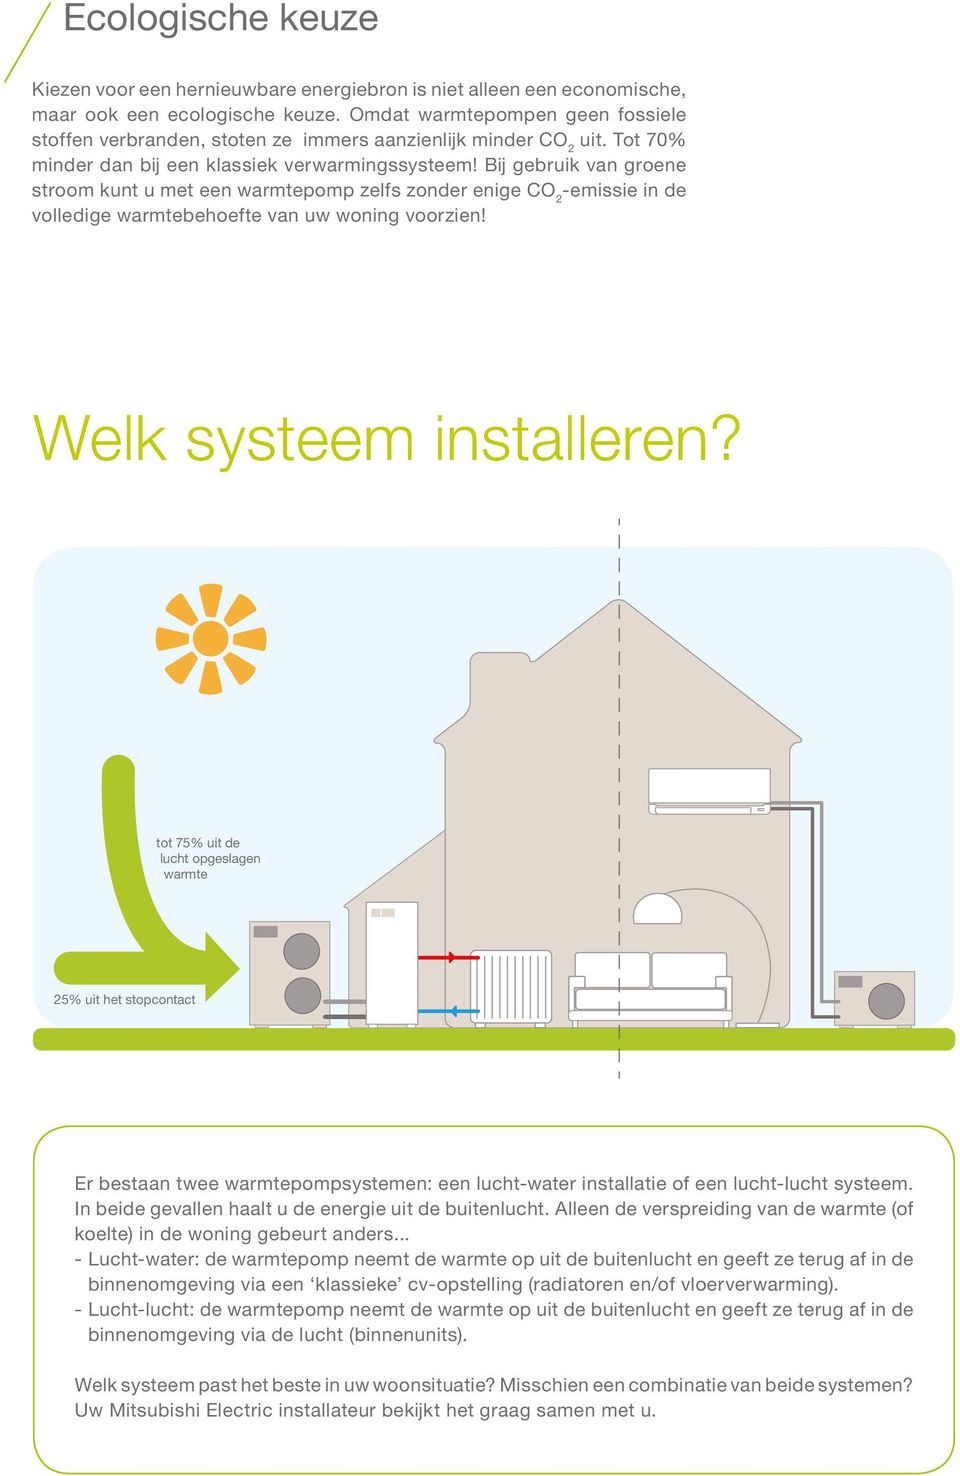 Bij gebruik van groene stroom kunt u met een warmtepomp zelfs zonder enige CO 2 -emissie in de volledige warmtebehoefte van uw woning voorzien! Welk systeem installeren?